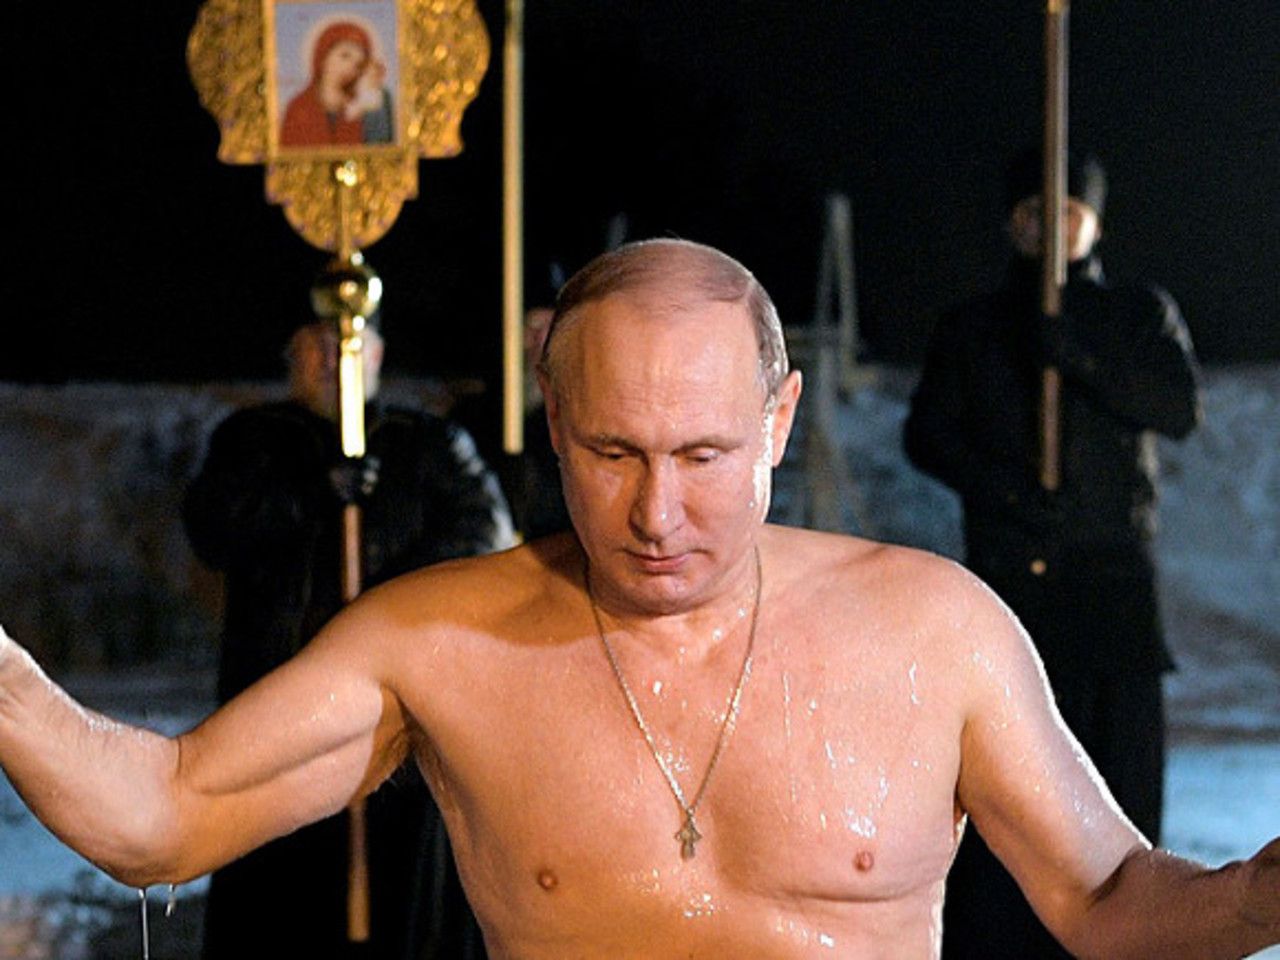 Фото Путина В Проруби